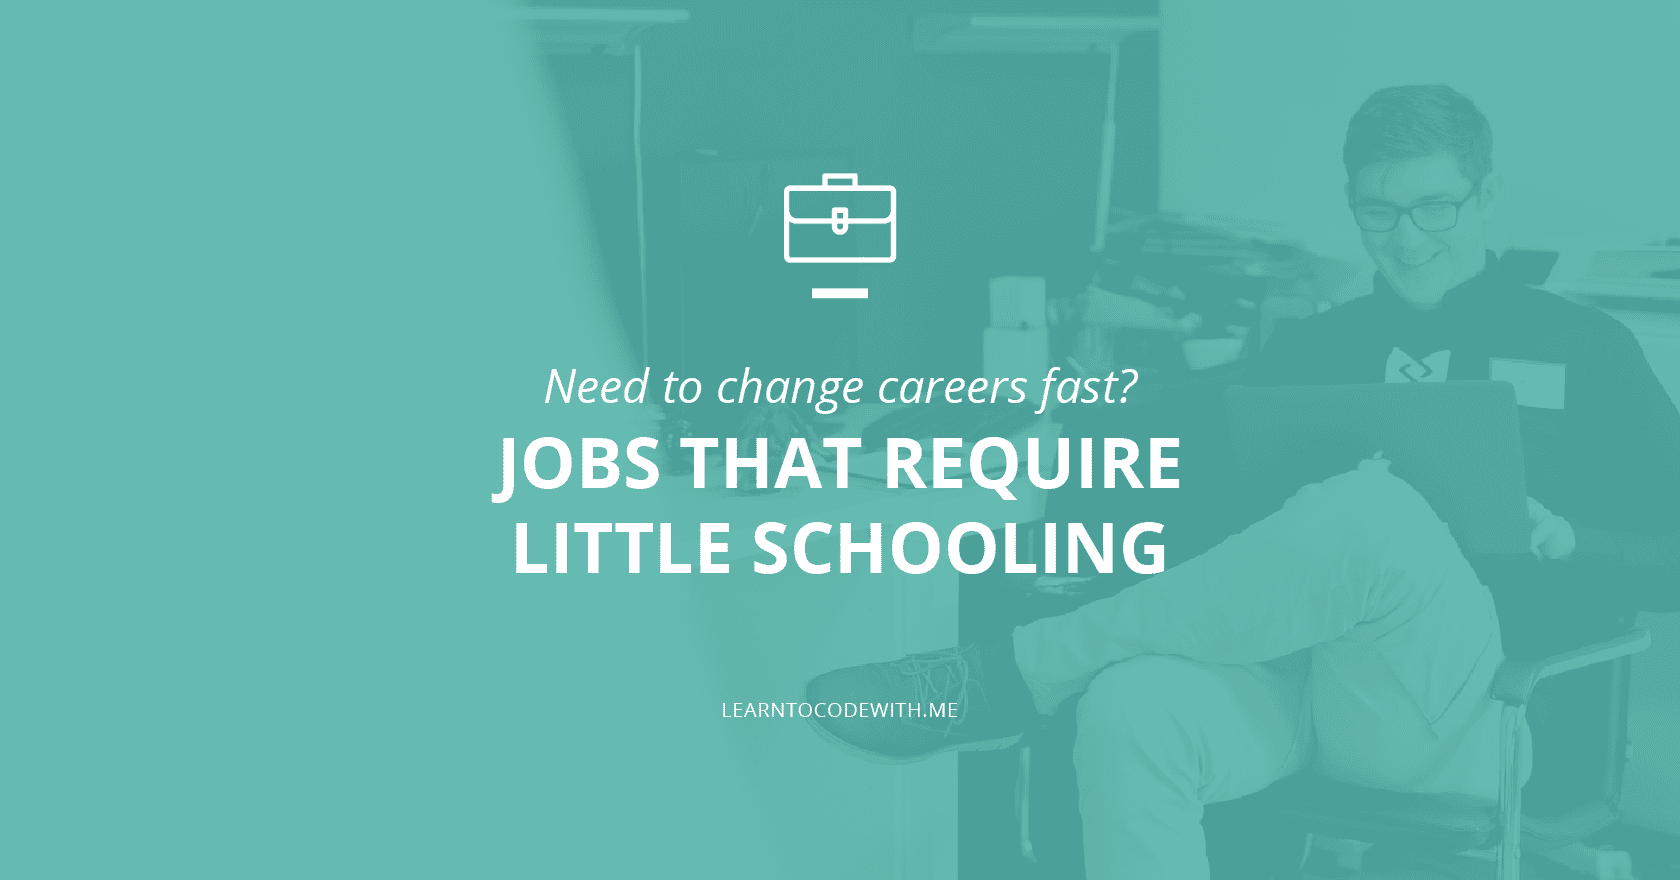 Jobs that require little schooling